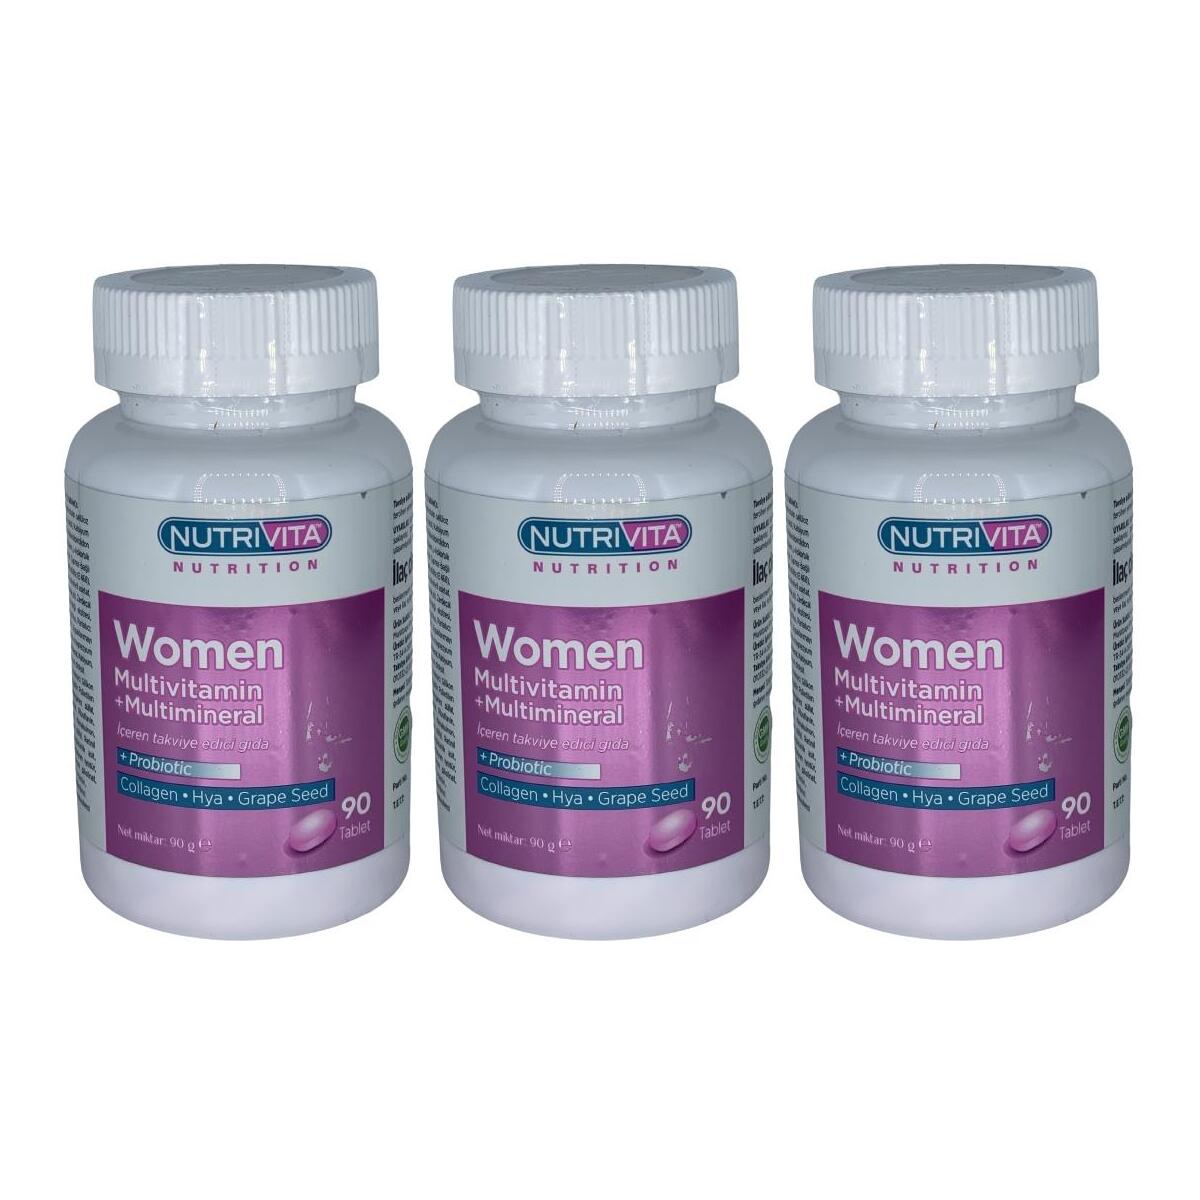 Nutrivita Nutrition Women Multivitamin Multimineral 3X90 Tablet Probiotic Hidrolize Collagen